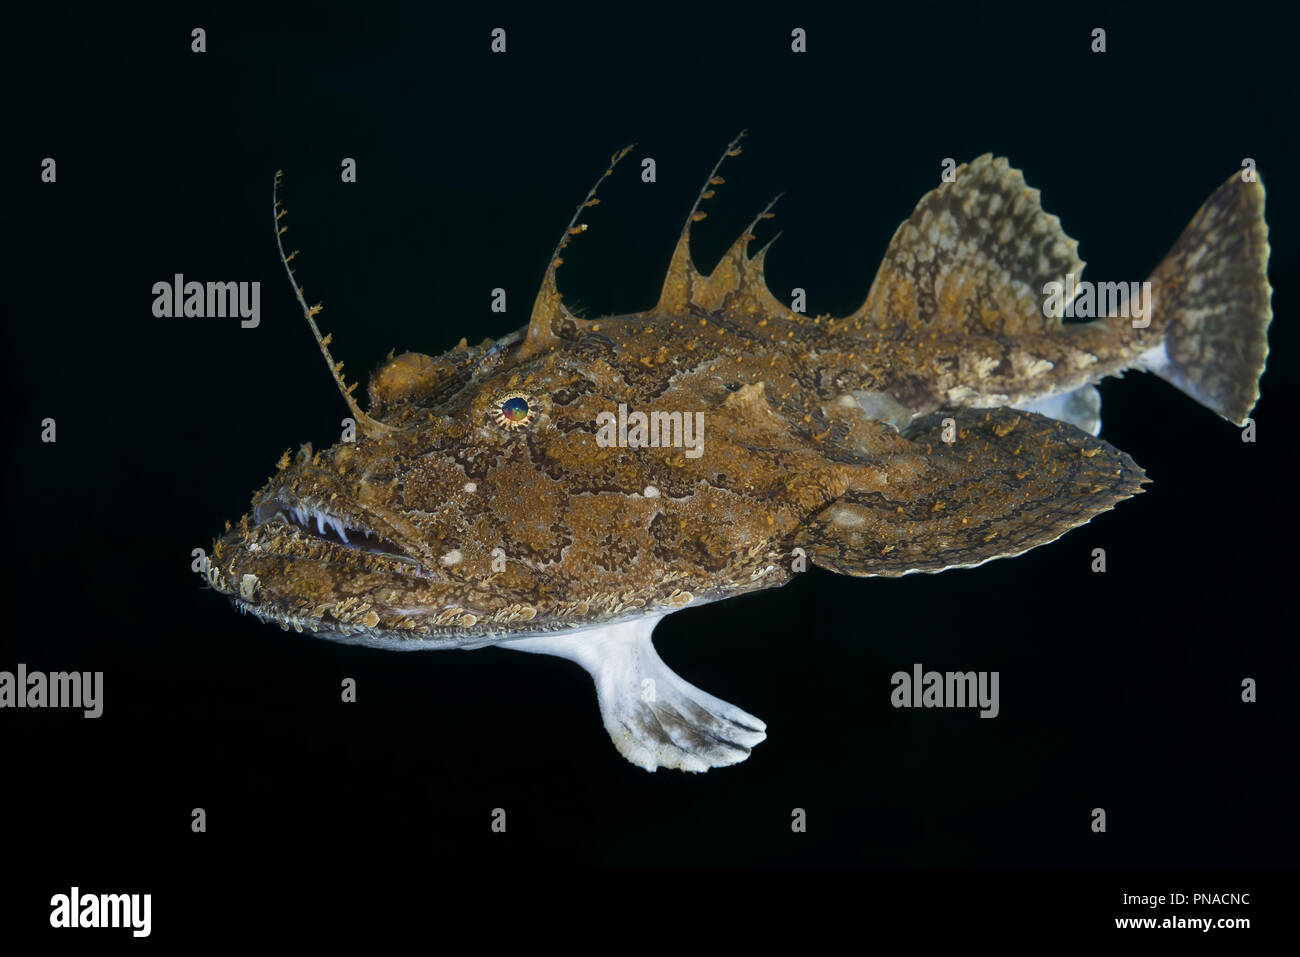 La lotte ou baudroie (Lophius piscatorius) nager dans la nuit Banque D'Images